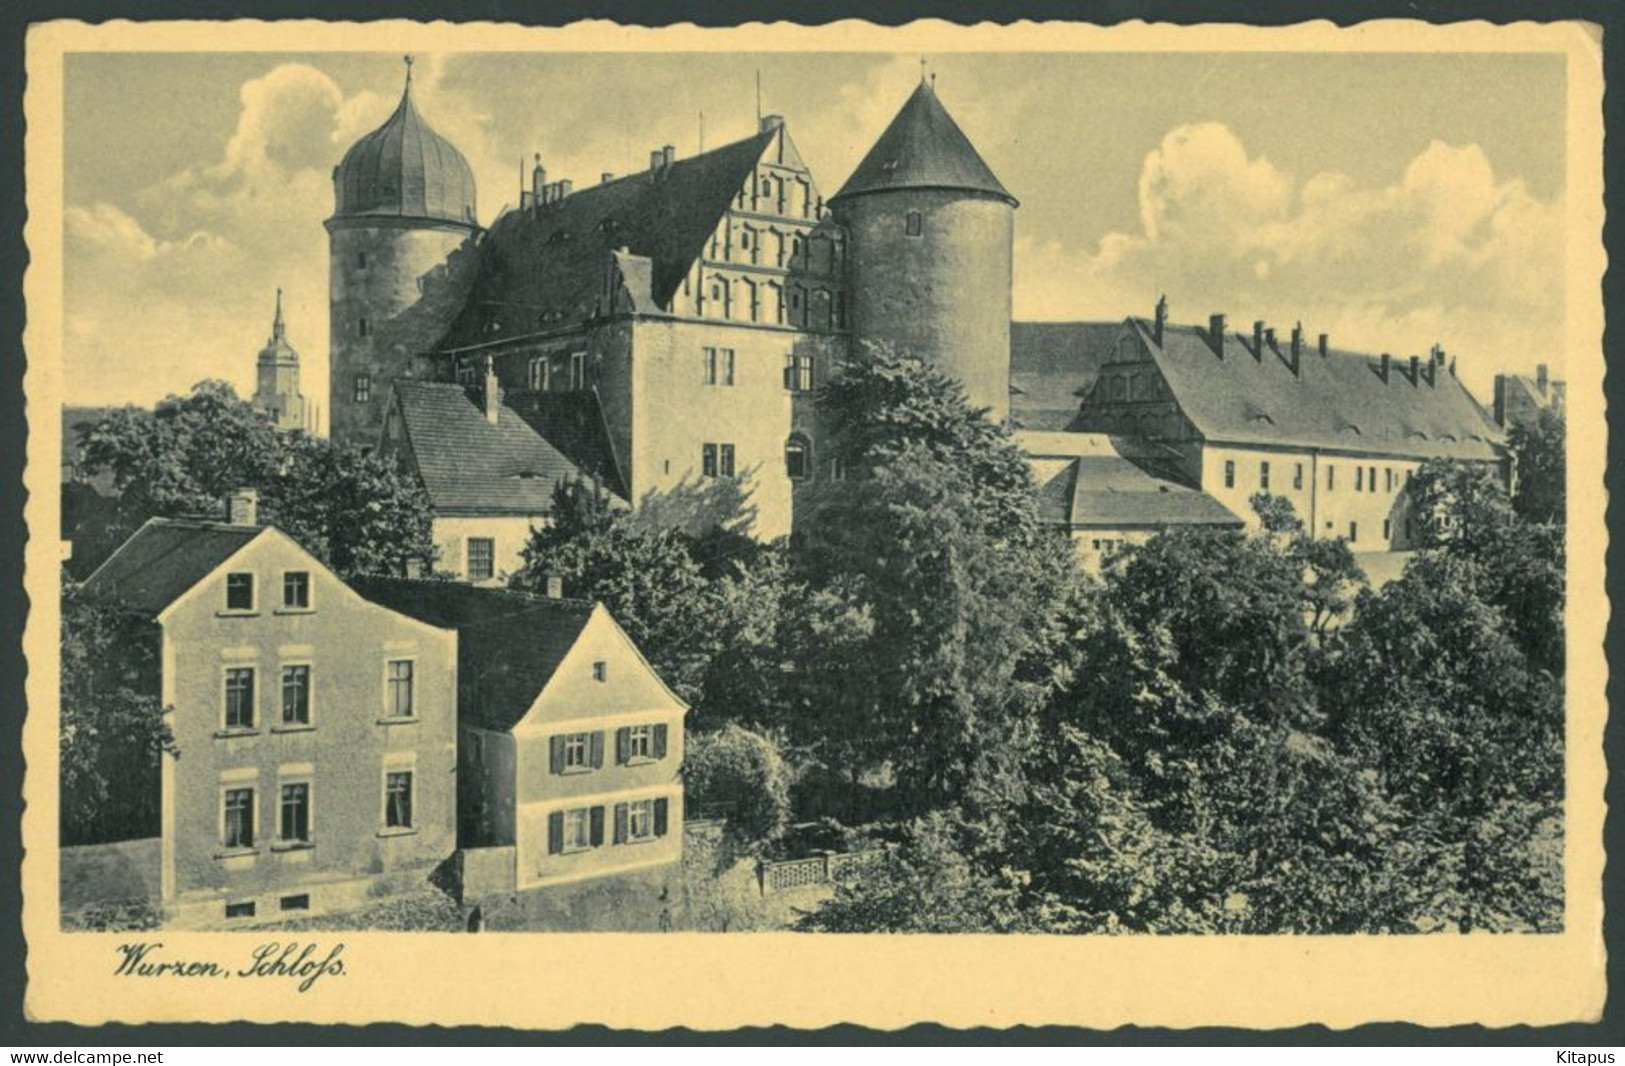 WURZEN Vintage Postcard Germany - Wurzen